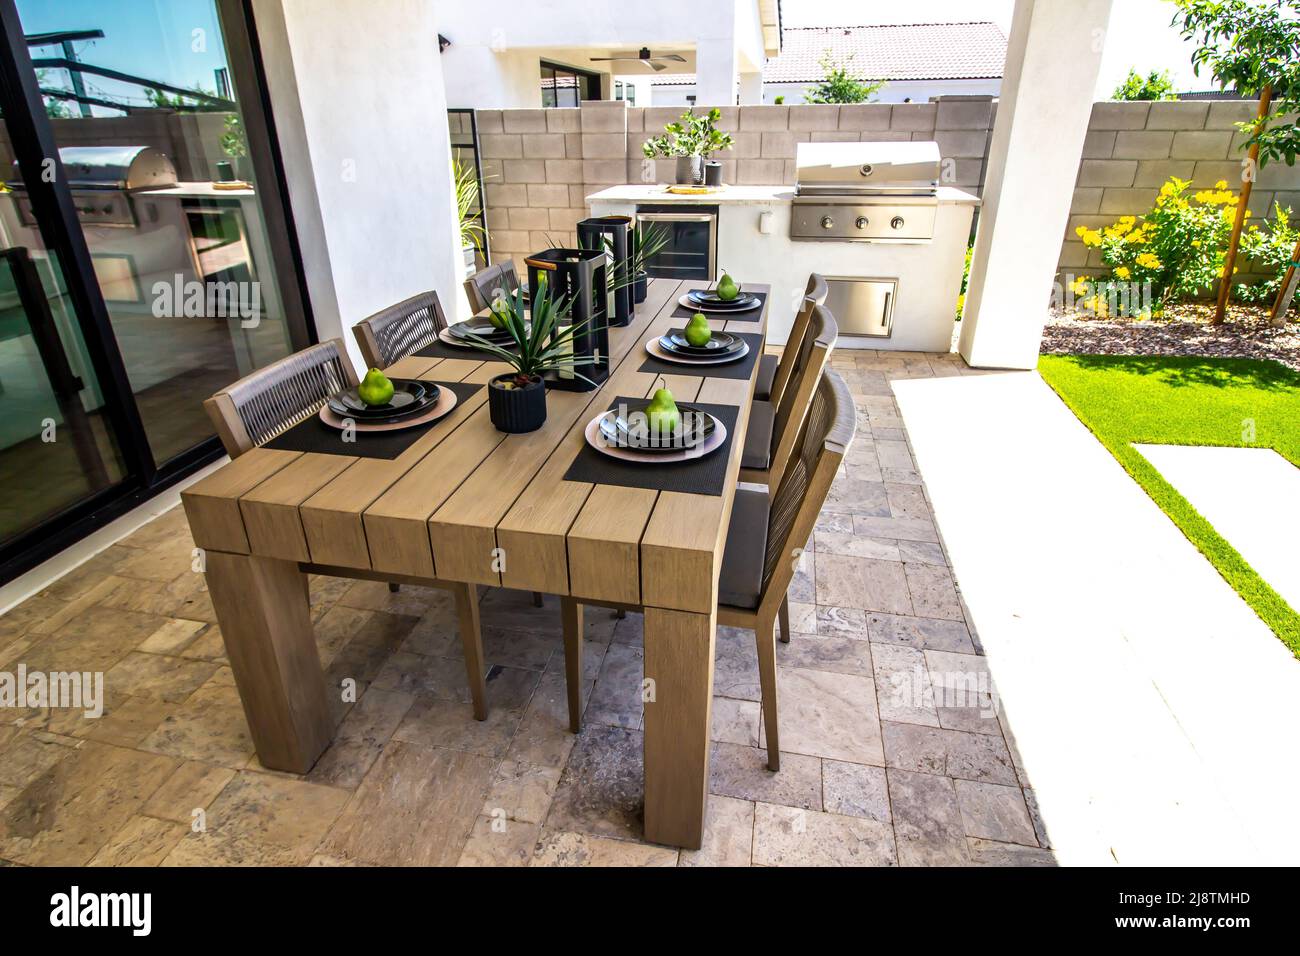 Patio posteriore con giardino, sedie e barbecue incorporato Foto Stock